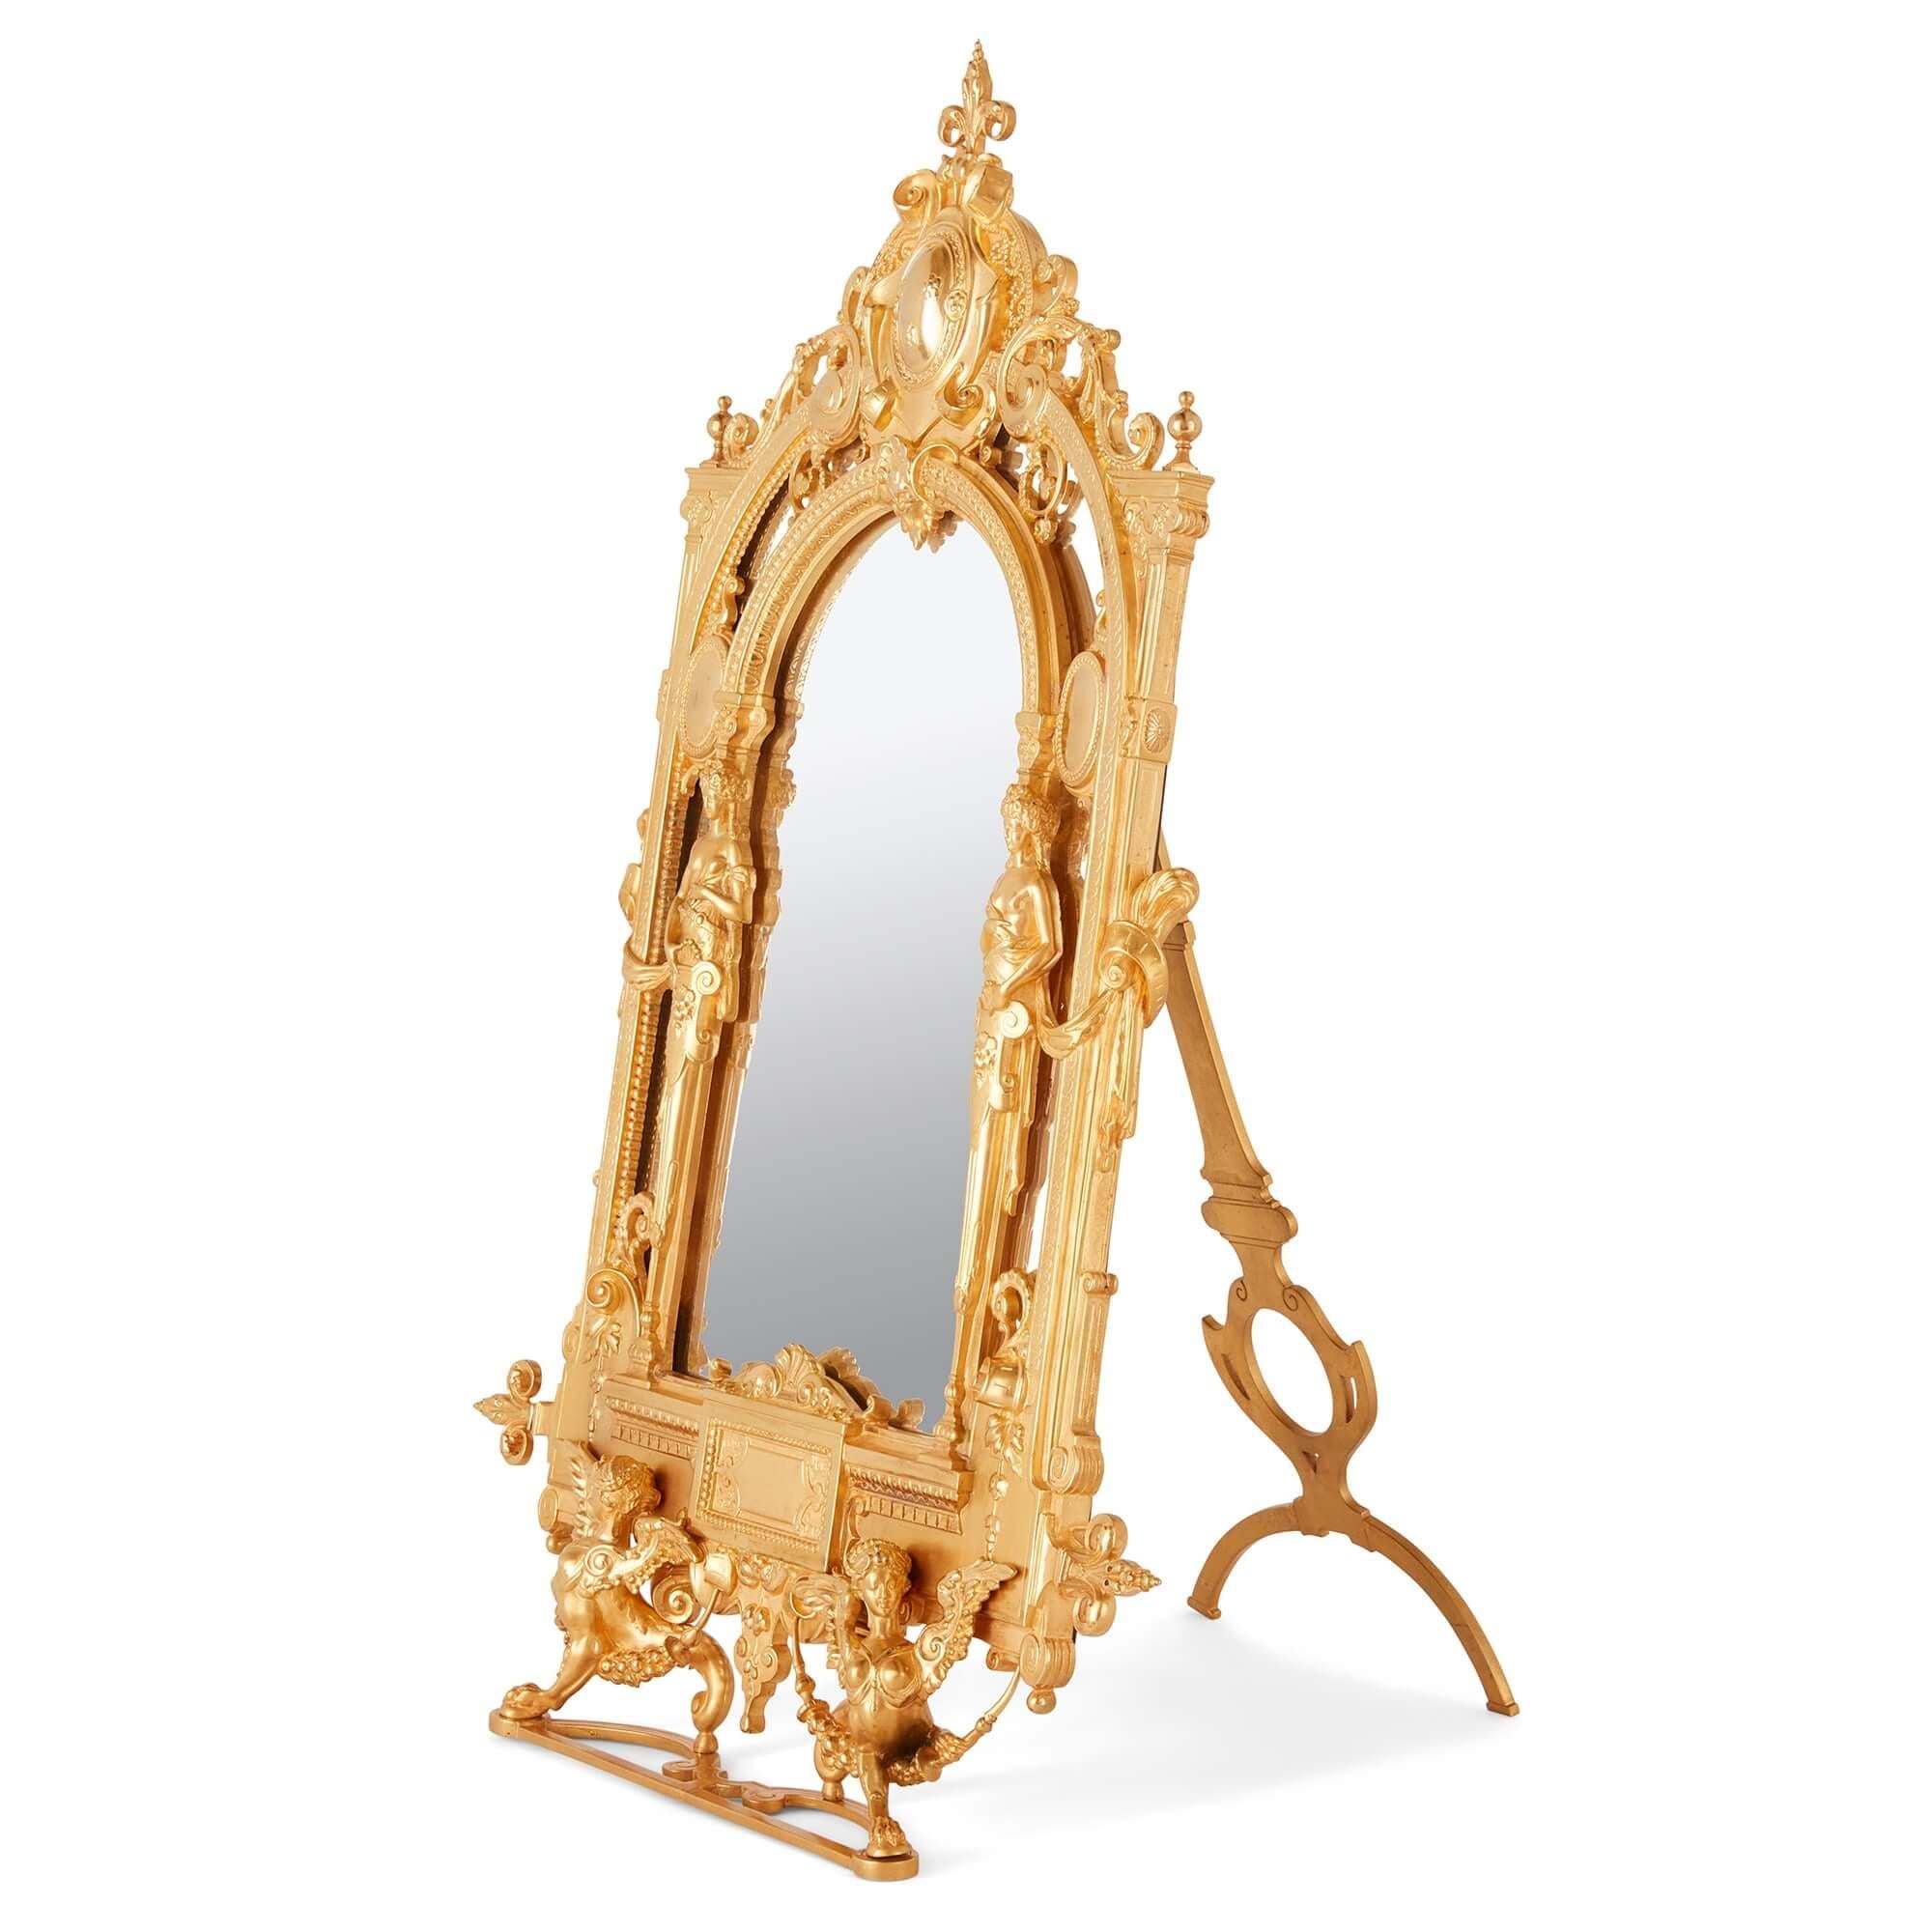 Miroir de table en bronze doré de style Empire du 19e siècle
Français, 19e siècle
Hauteur 56cm, largeur 37cm, profondeur 4cm, profondeur ouverte 46cm

Ce beau miroir de table est entièrement coulé en bronze doré dans le style Empire, qui devint